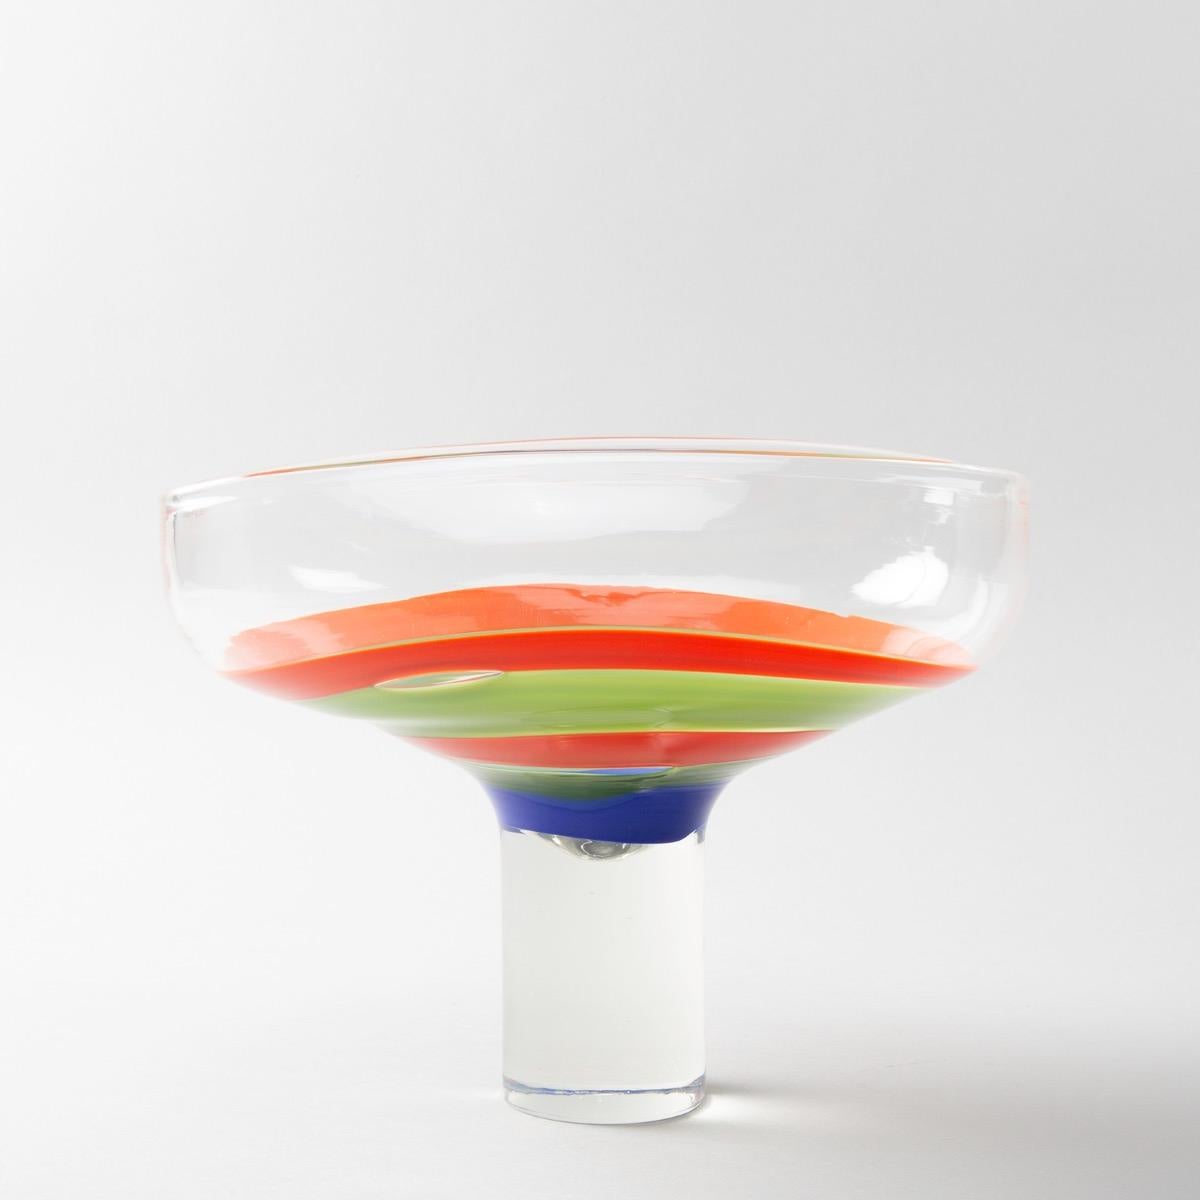 Eine seltene große Tasse, entworfen von Ludovico Diaz de Santillana für Philips, ca. 1968-1970.
Ein rechteckiger Becher auf einem hohen zylindrischen Fuß.
Die Mitte ist mit konzentrischen Bändern aus orangefarbenem, blauem und grünem Glas